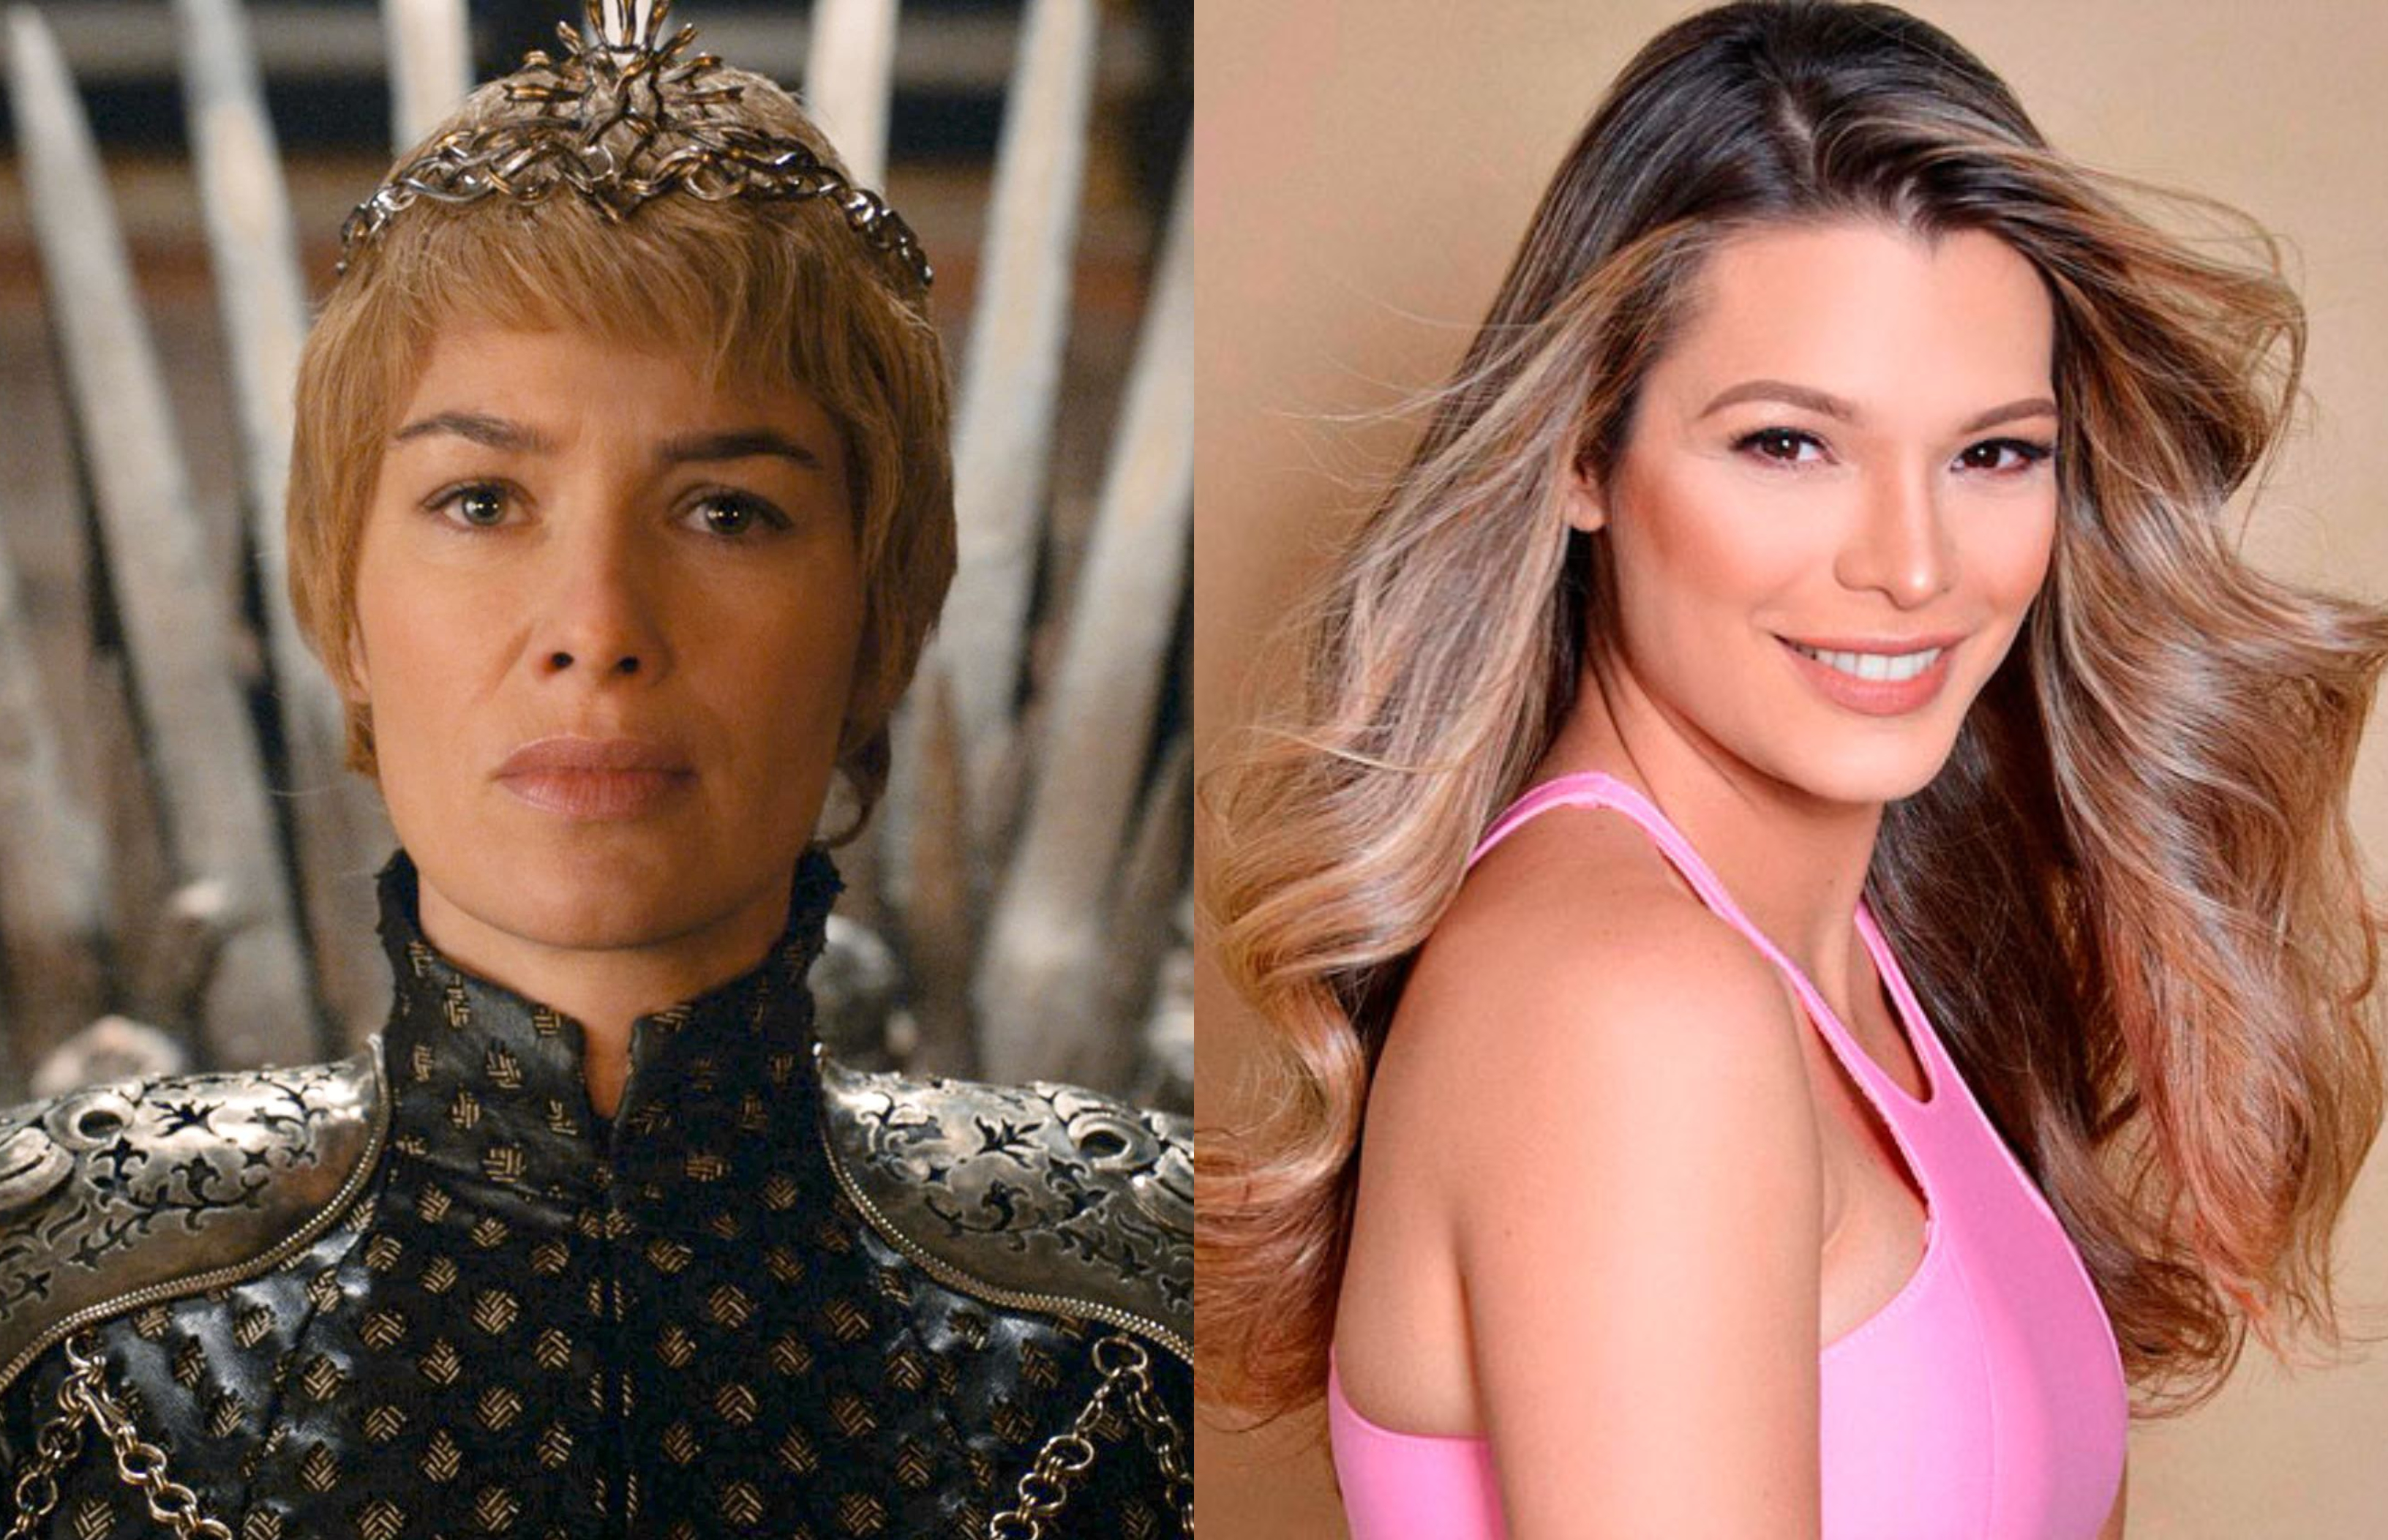 Comparan a Mariangel Ruiz con personaje de Game of Thrones tras atrevido cambio de look